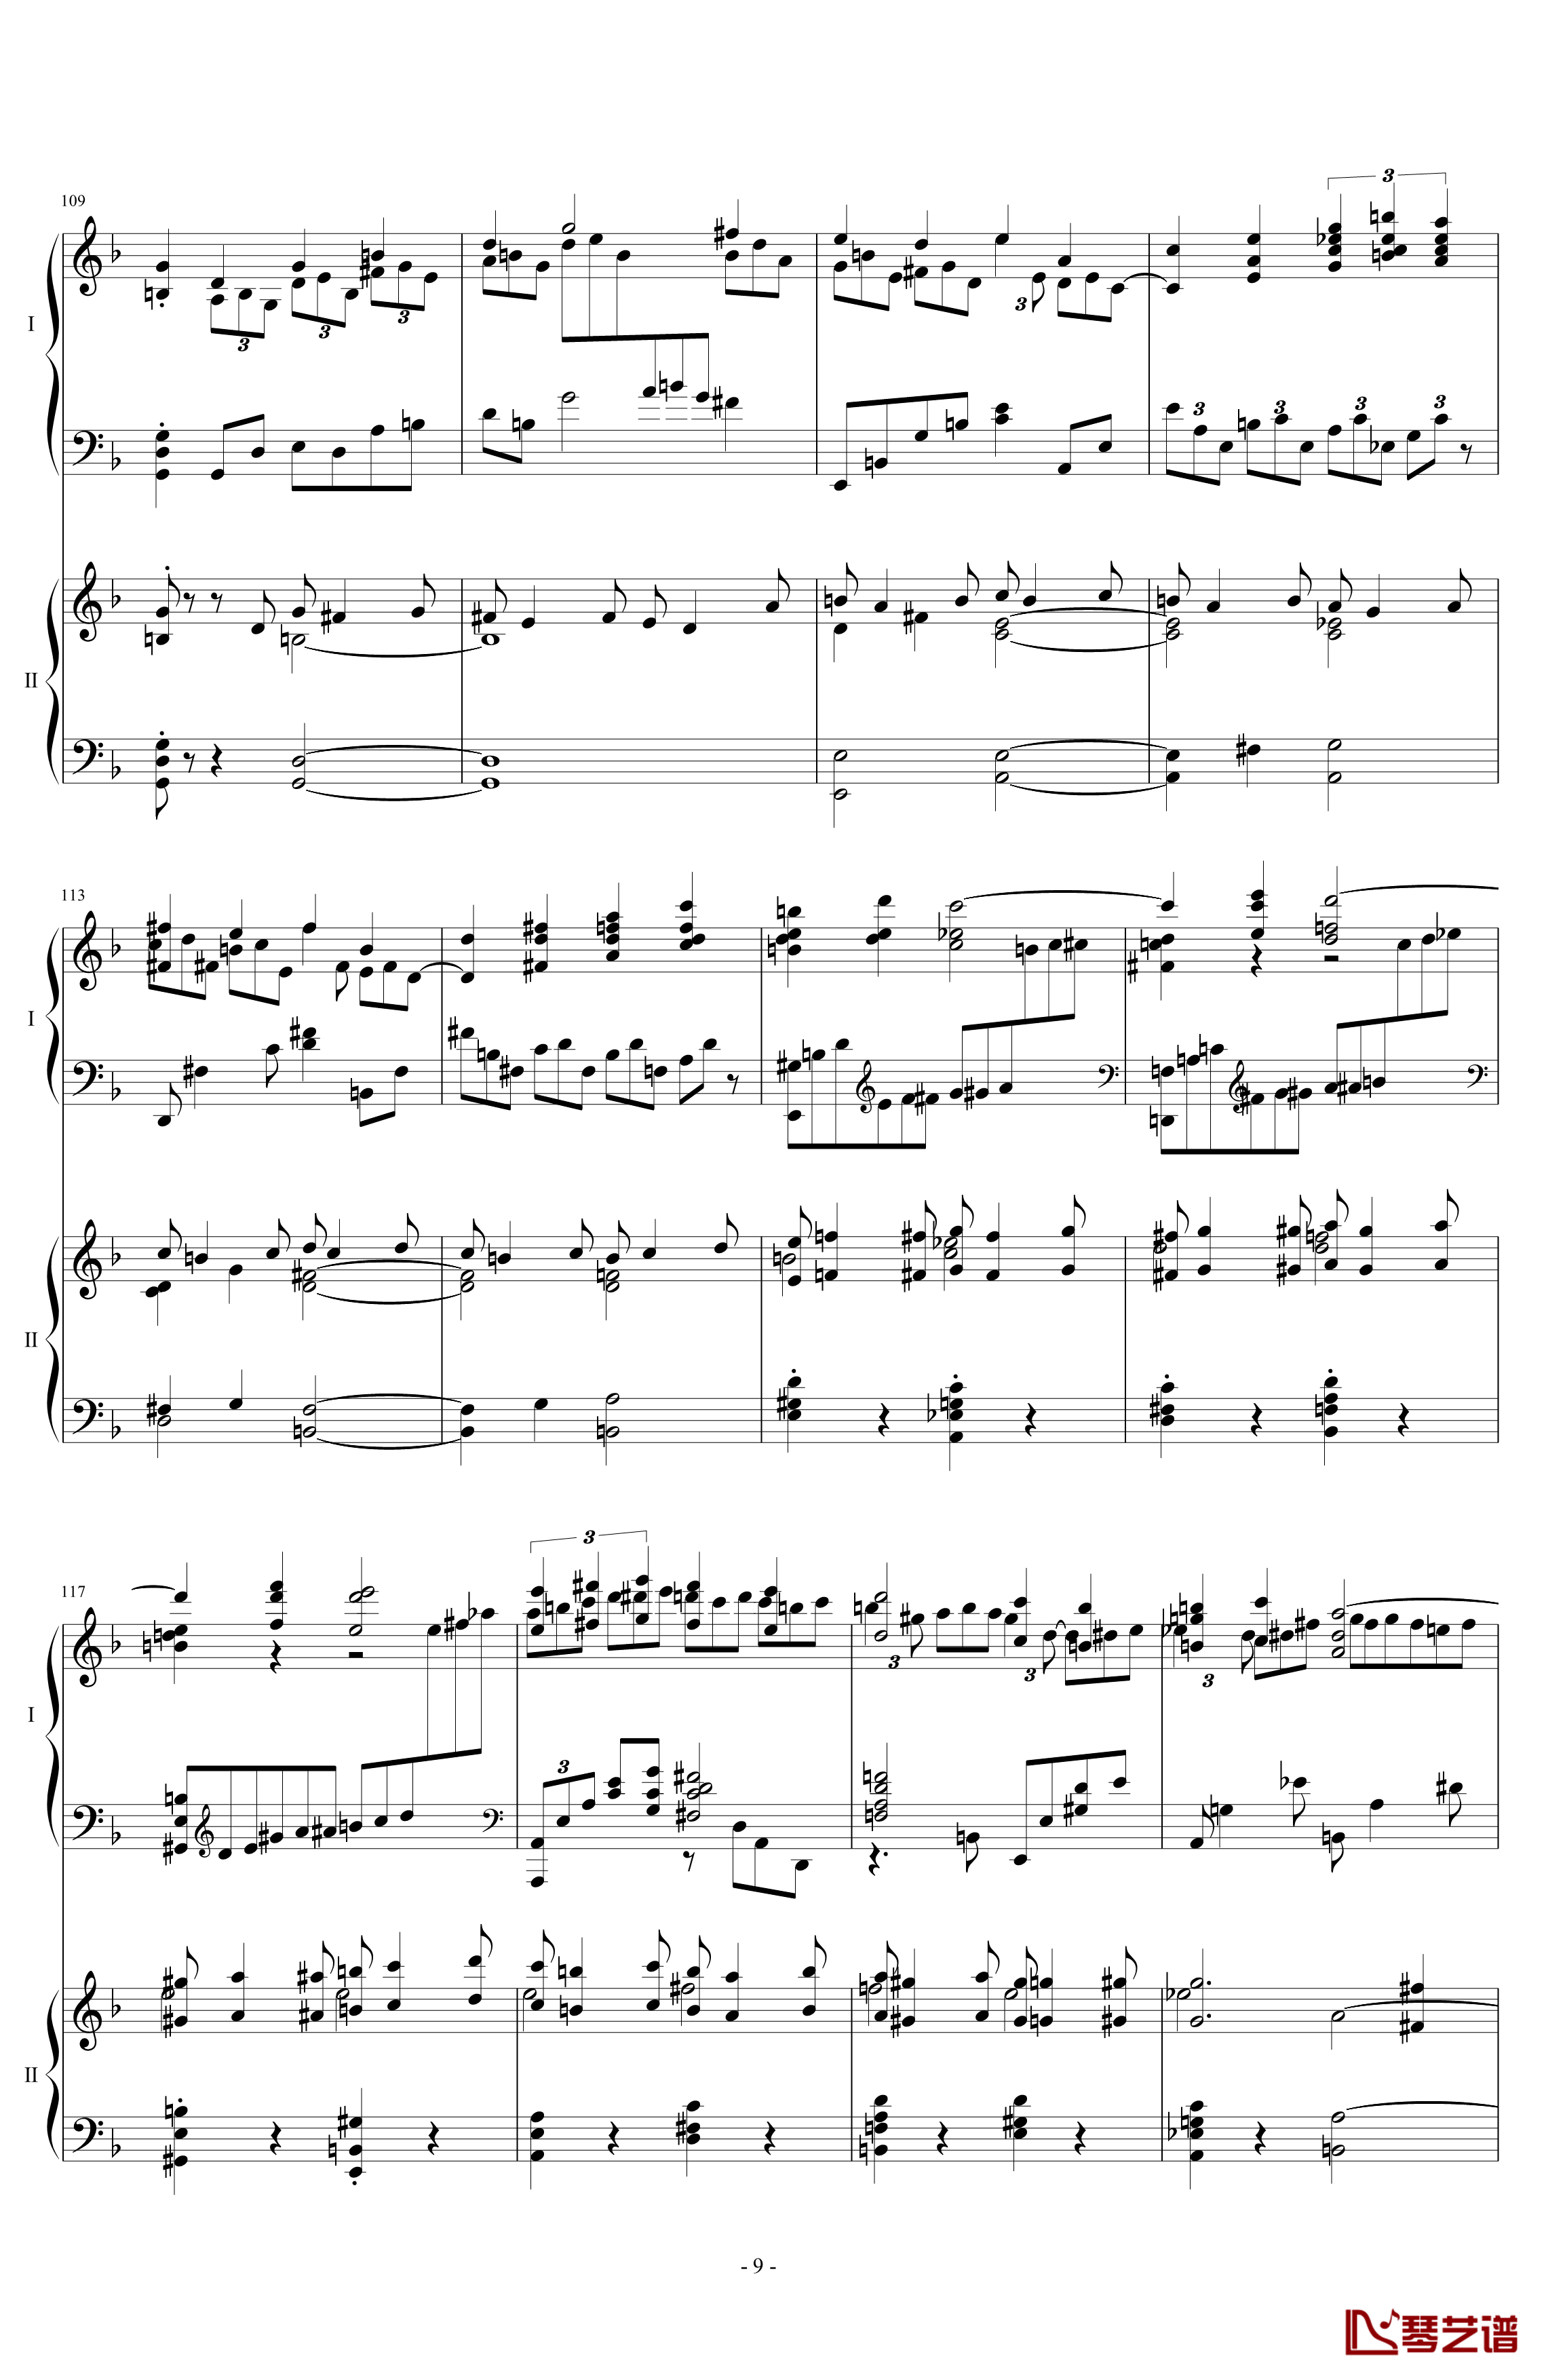 拉三第三乐章41页双钢琴钢琴谱-最难钢琴曲-拉赫马尼若夫9